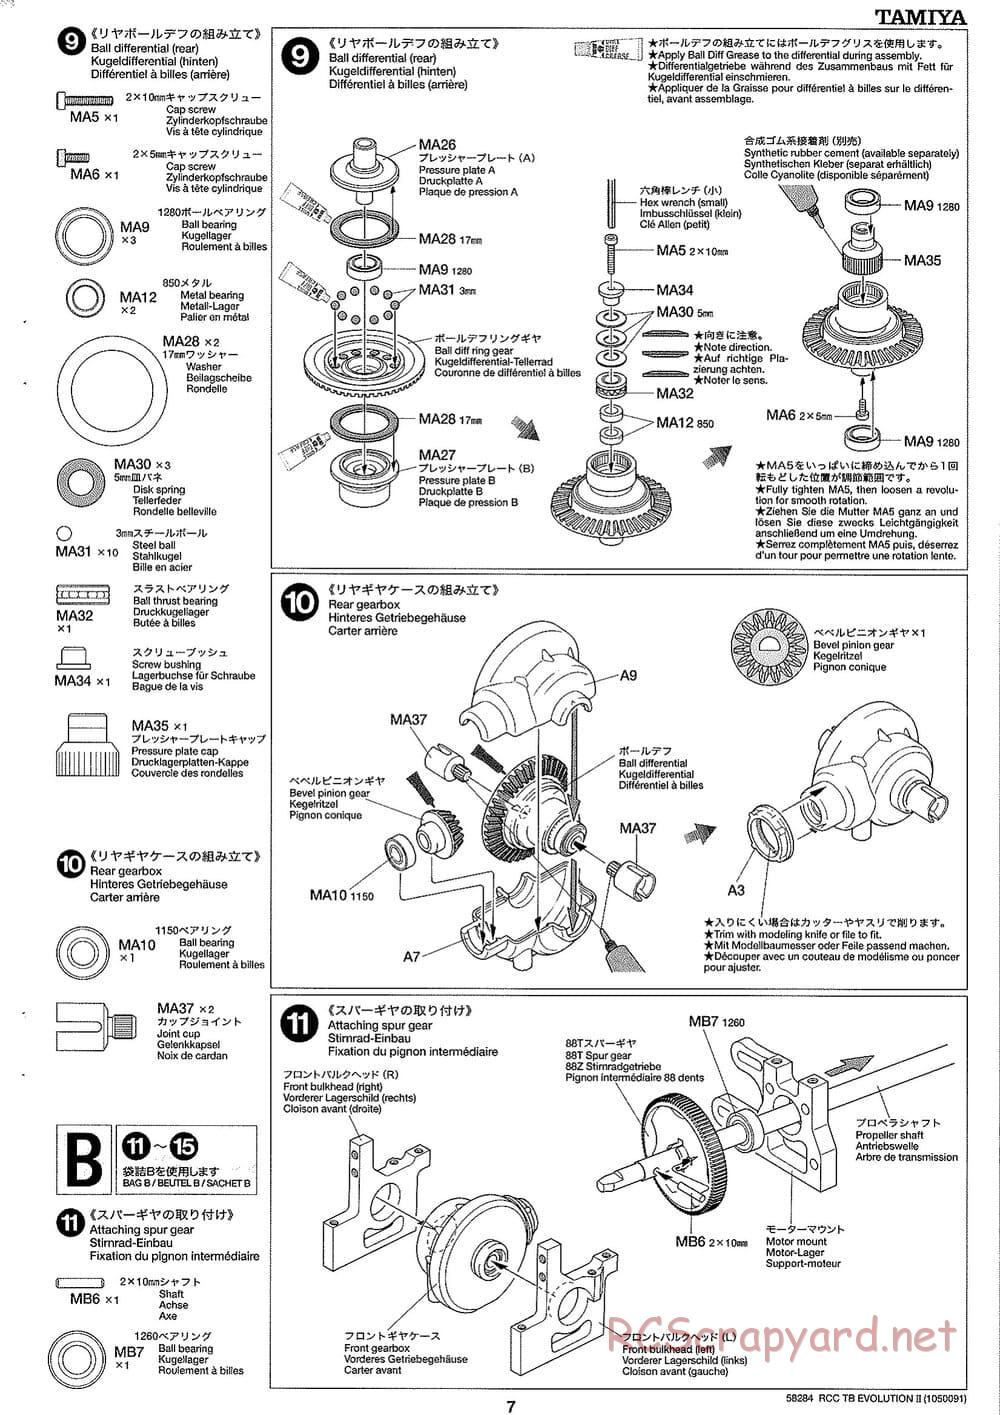 Tamiya - TB Evolution II Chassis - Manual - Page 7